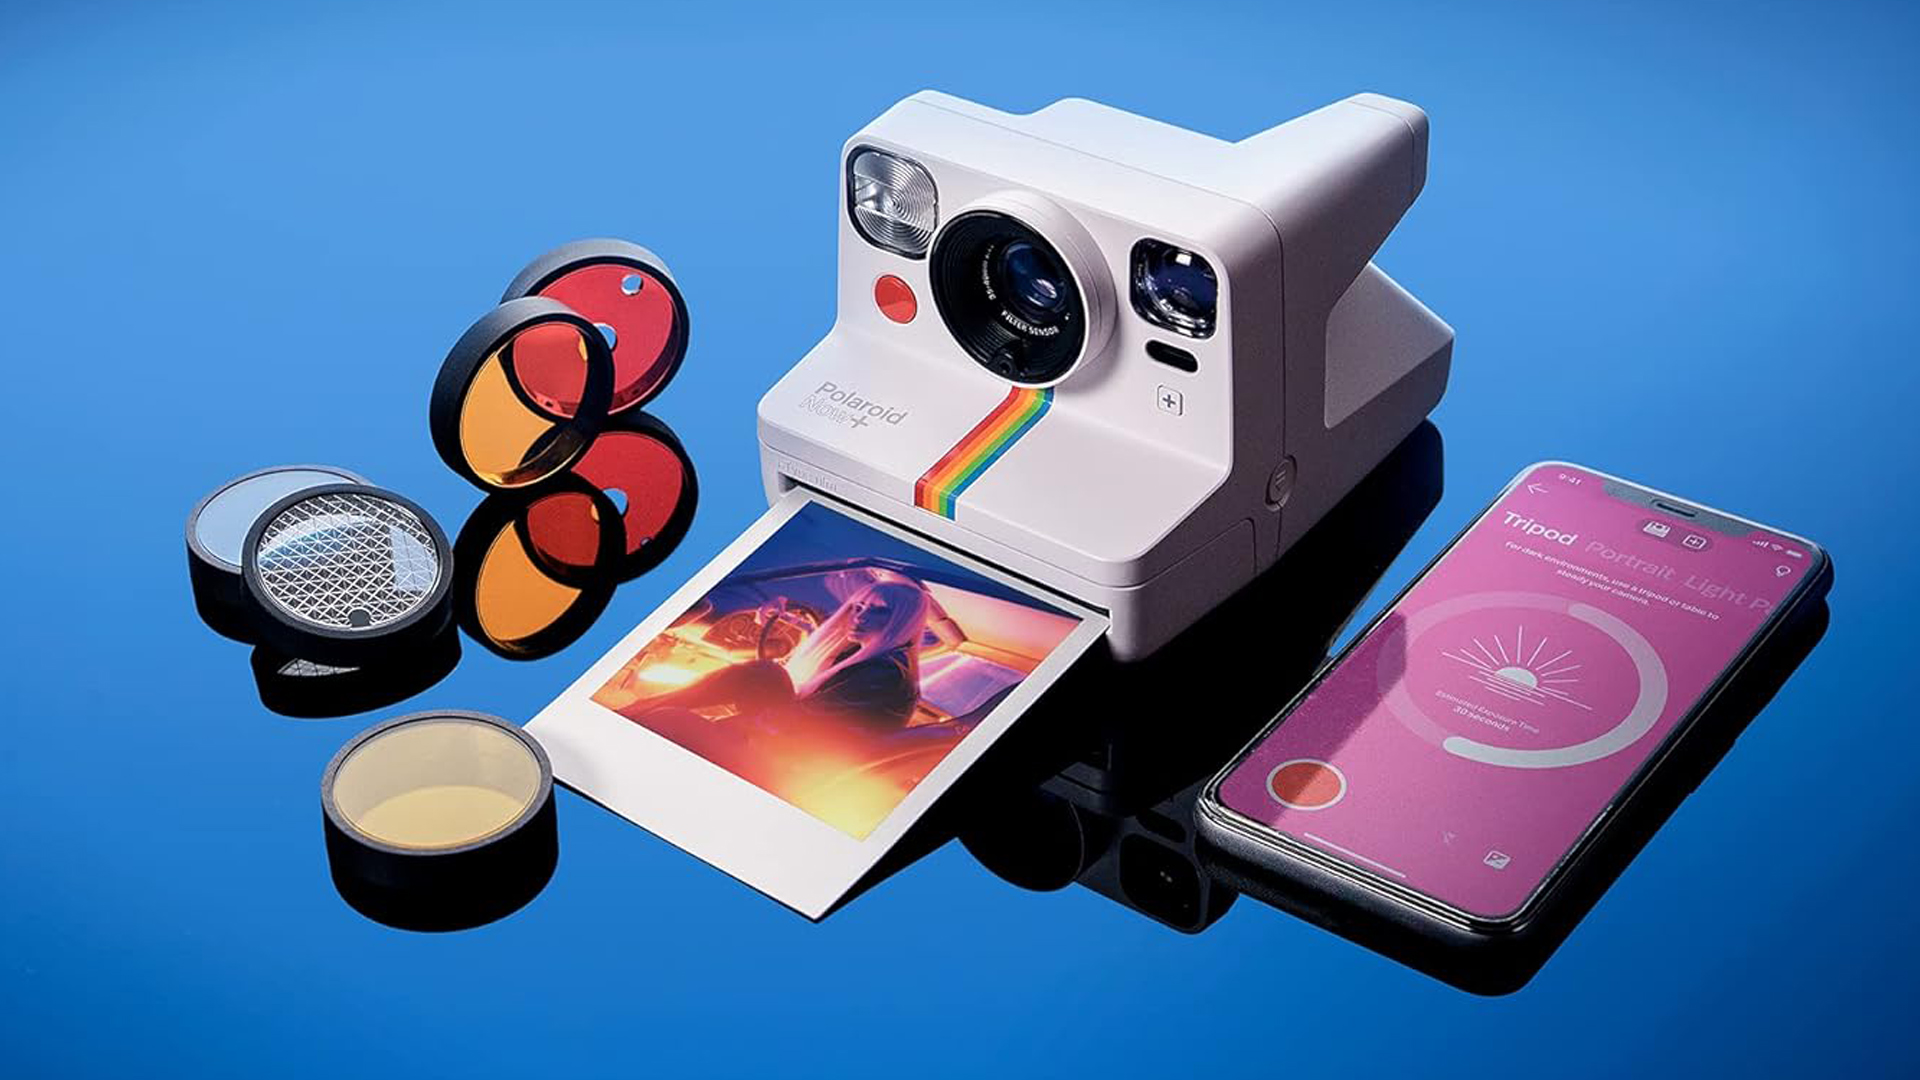 Las mejores cámaras instantáneas: Polaroid, Fujifilm, Kodak